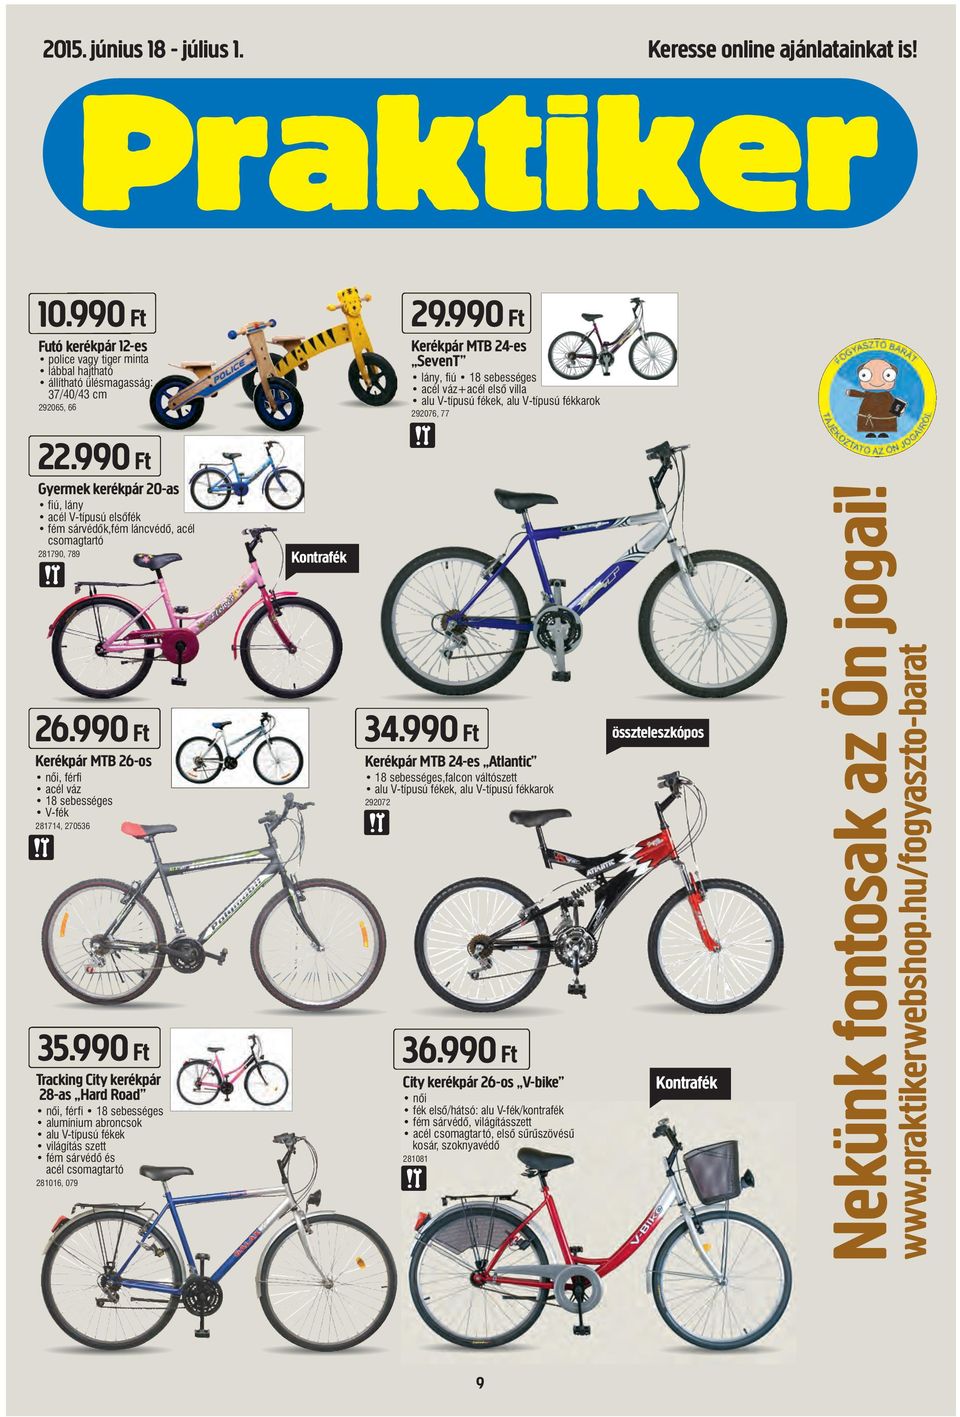 990 Ft Gyermek kerékpár 20-as fiú, lány acél V-típusú elsõfék fém sárvédõk,fém láncvédõ, acél csomagtartó 281790, 789 26.